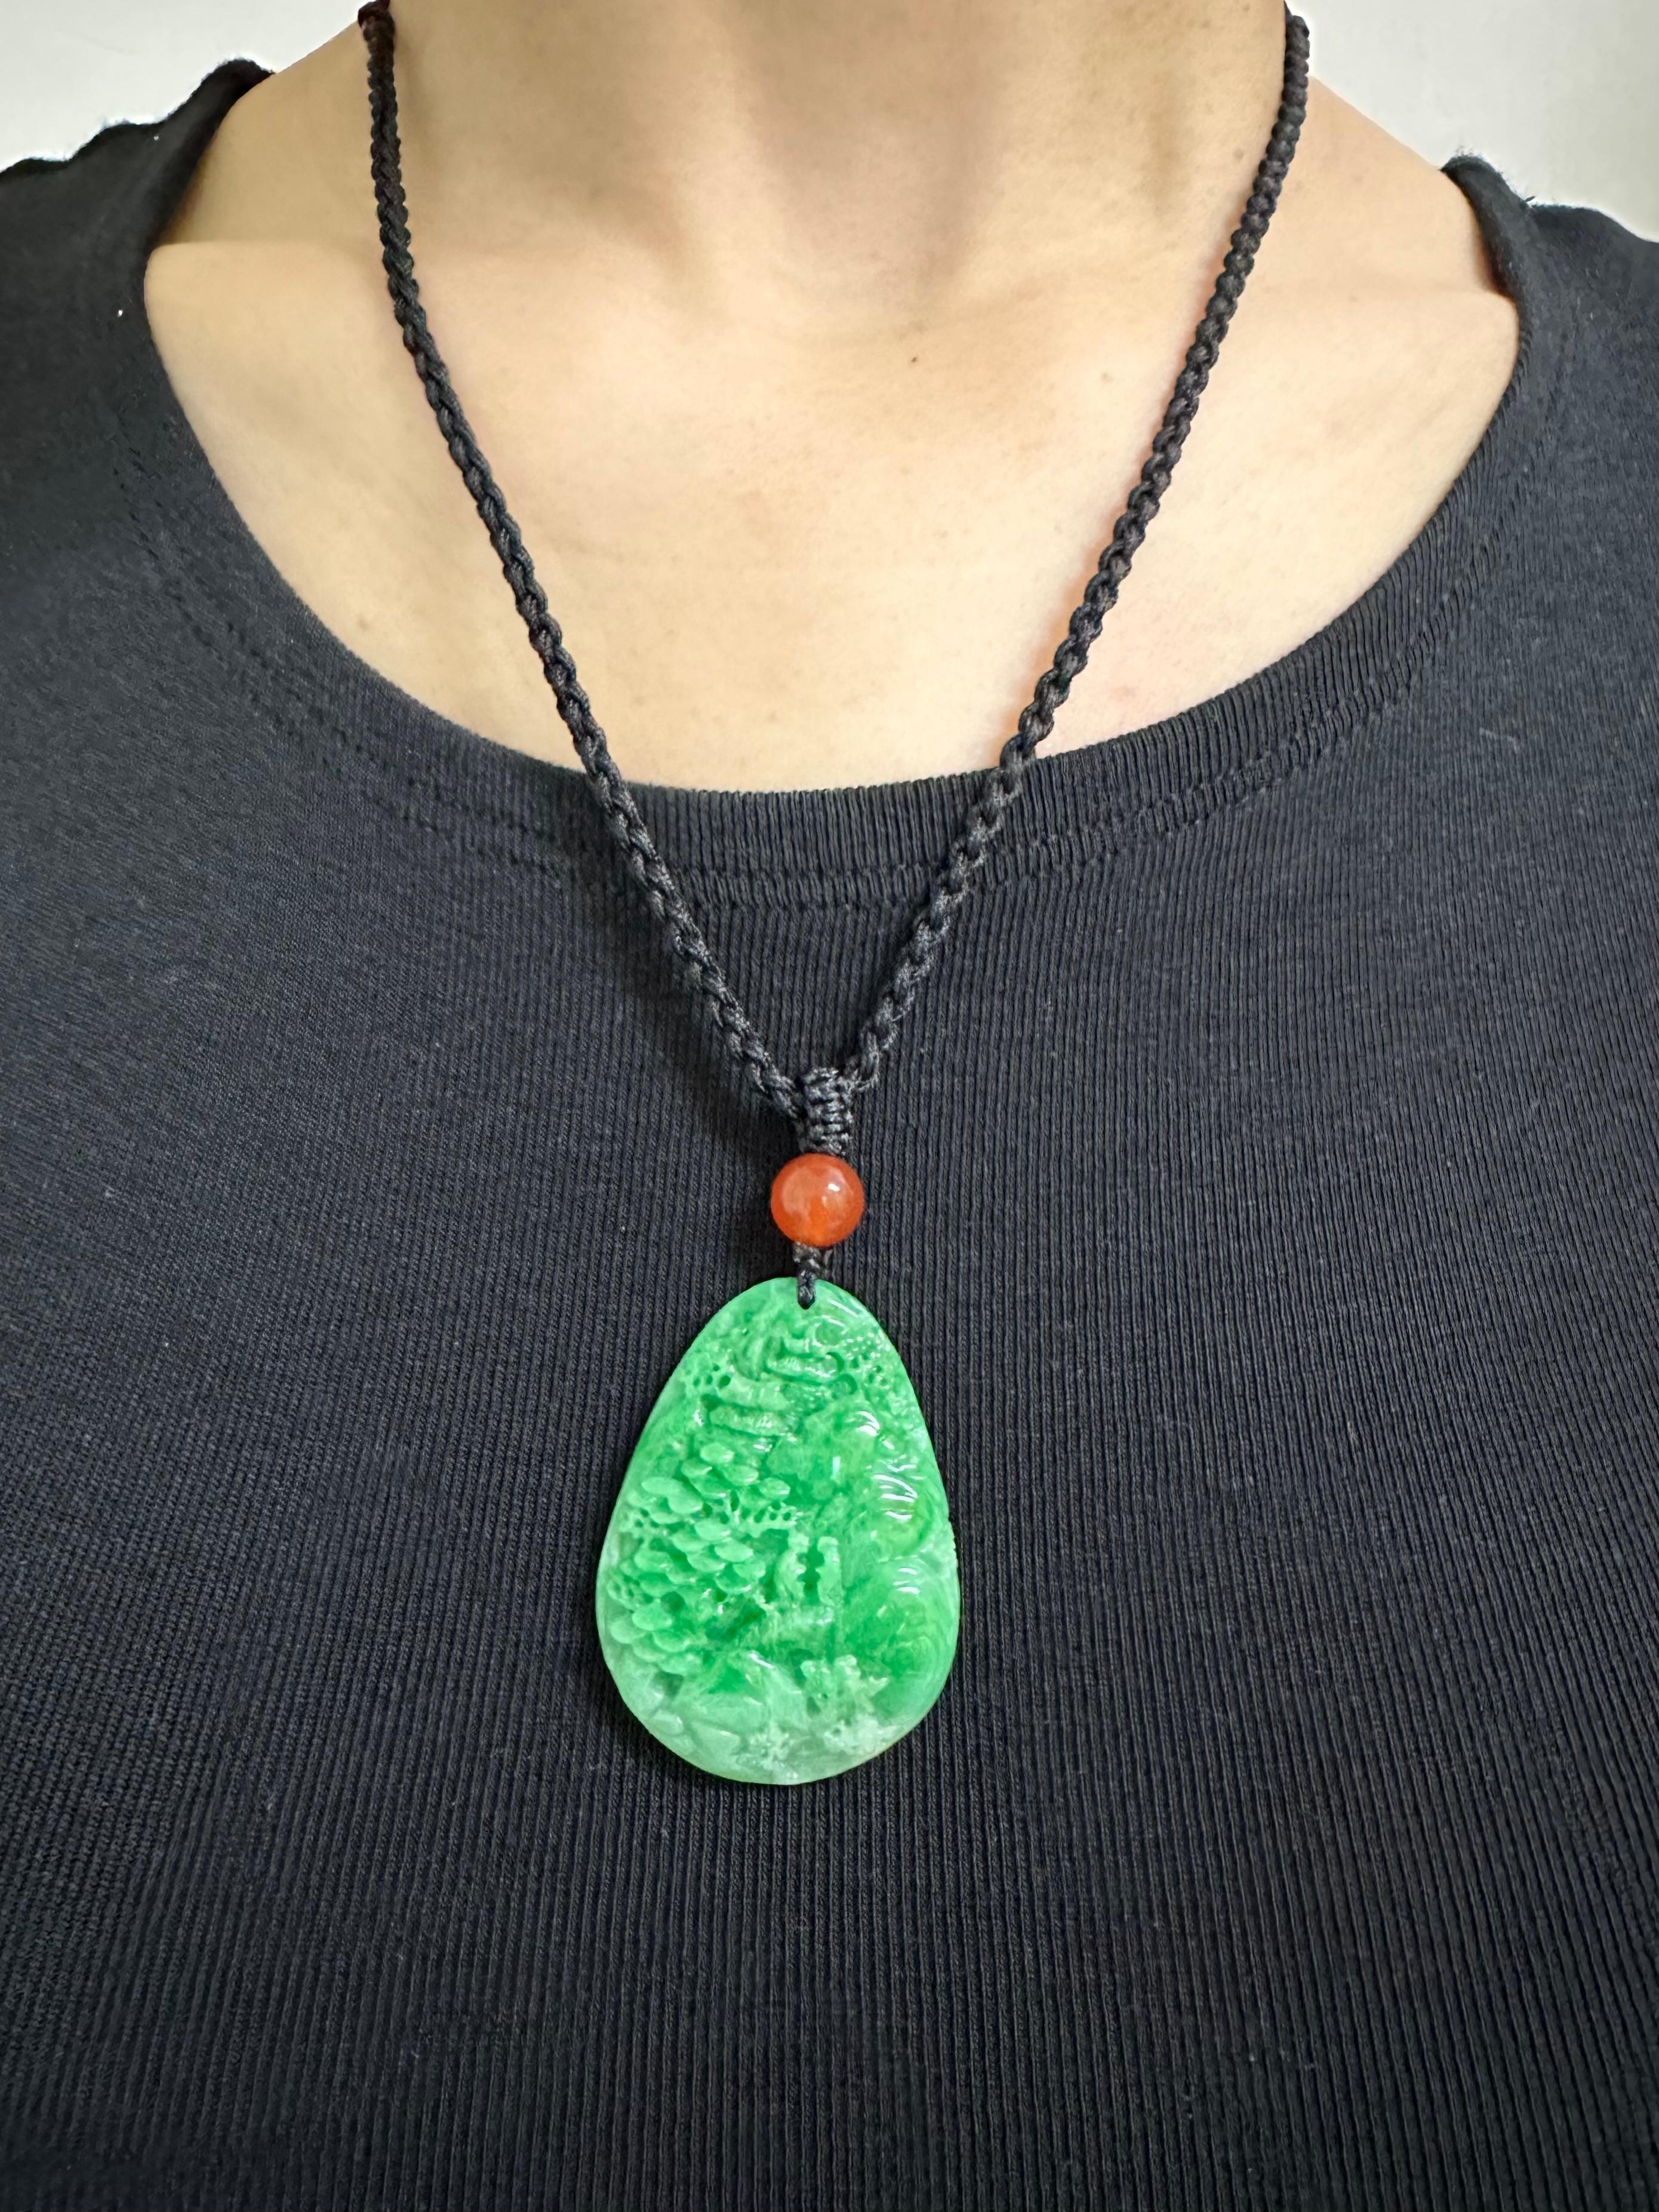 Veuillez consulter la vidéo HD. Il s'agit d'une jade naturelle certifiée. La sculpture en jade représente une montagne chinoise. Les deux côtés du pendentif en jade sont sculptés de façon magistrale. Les perles de jade vert pomme et d'agate rouge